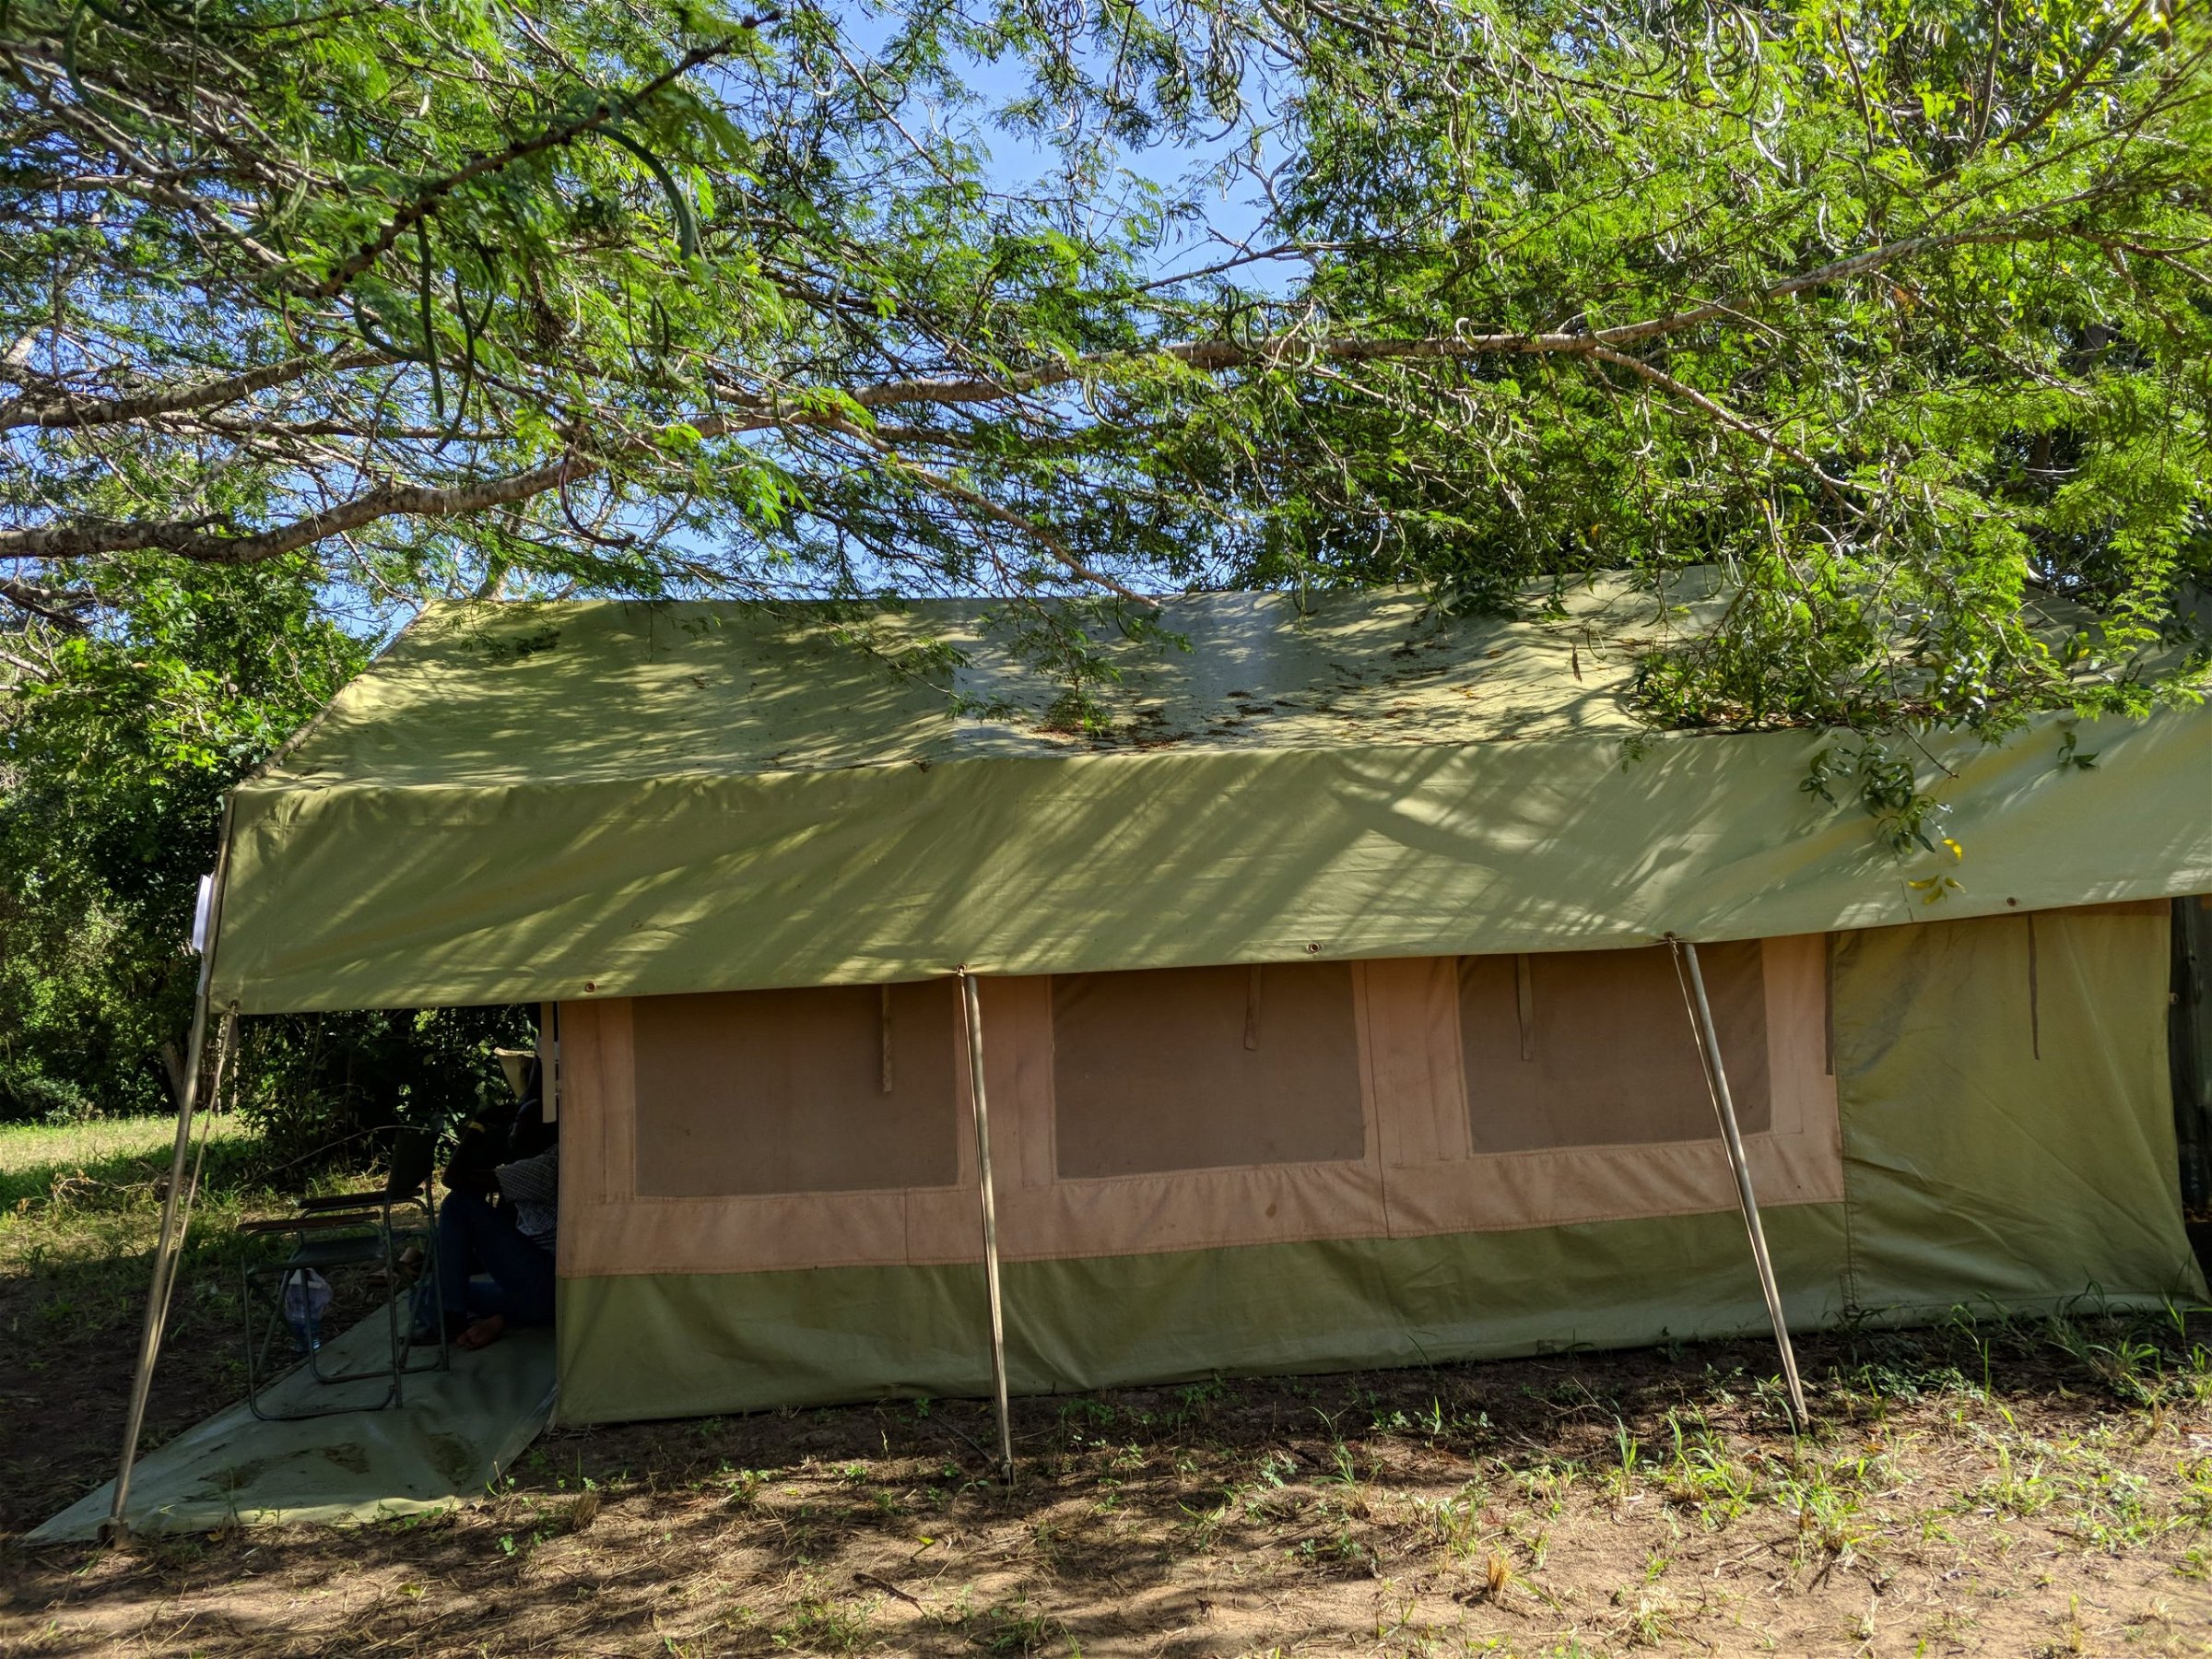 Camping Tents Nairobi